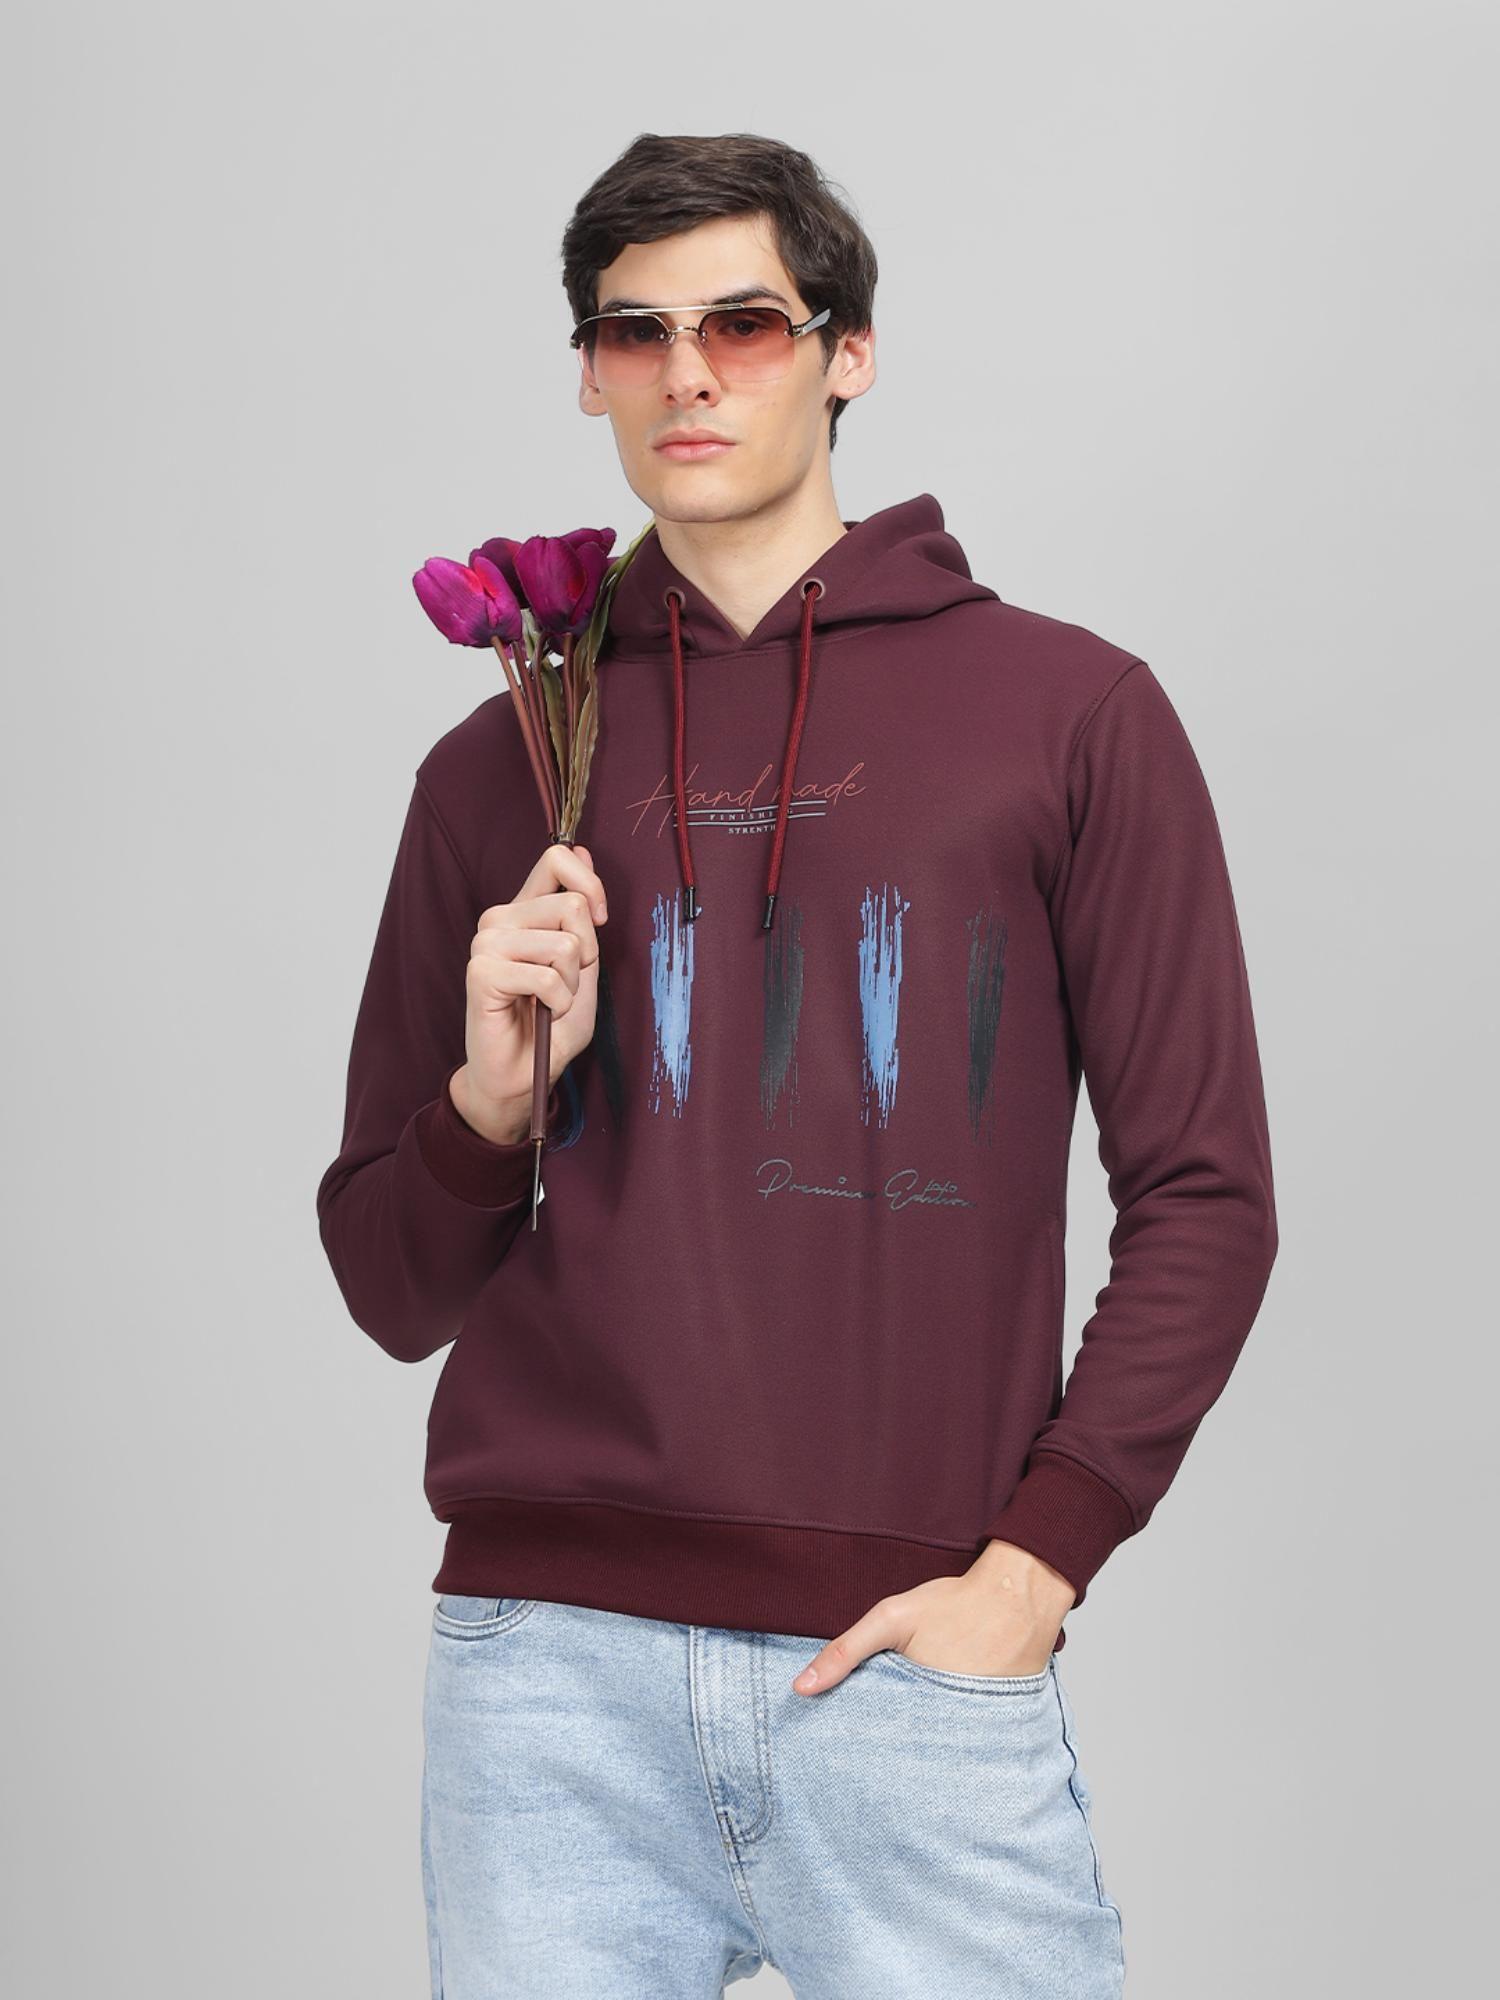 men's burgundy printed hooded sweatshirt